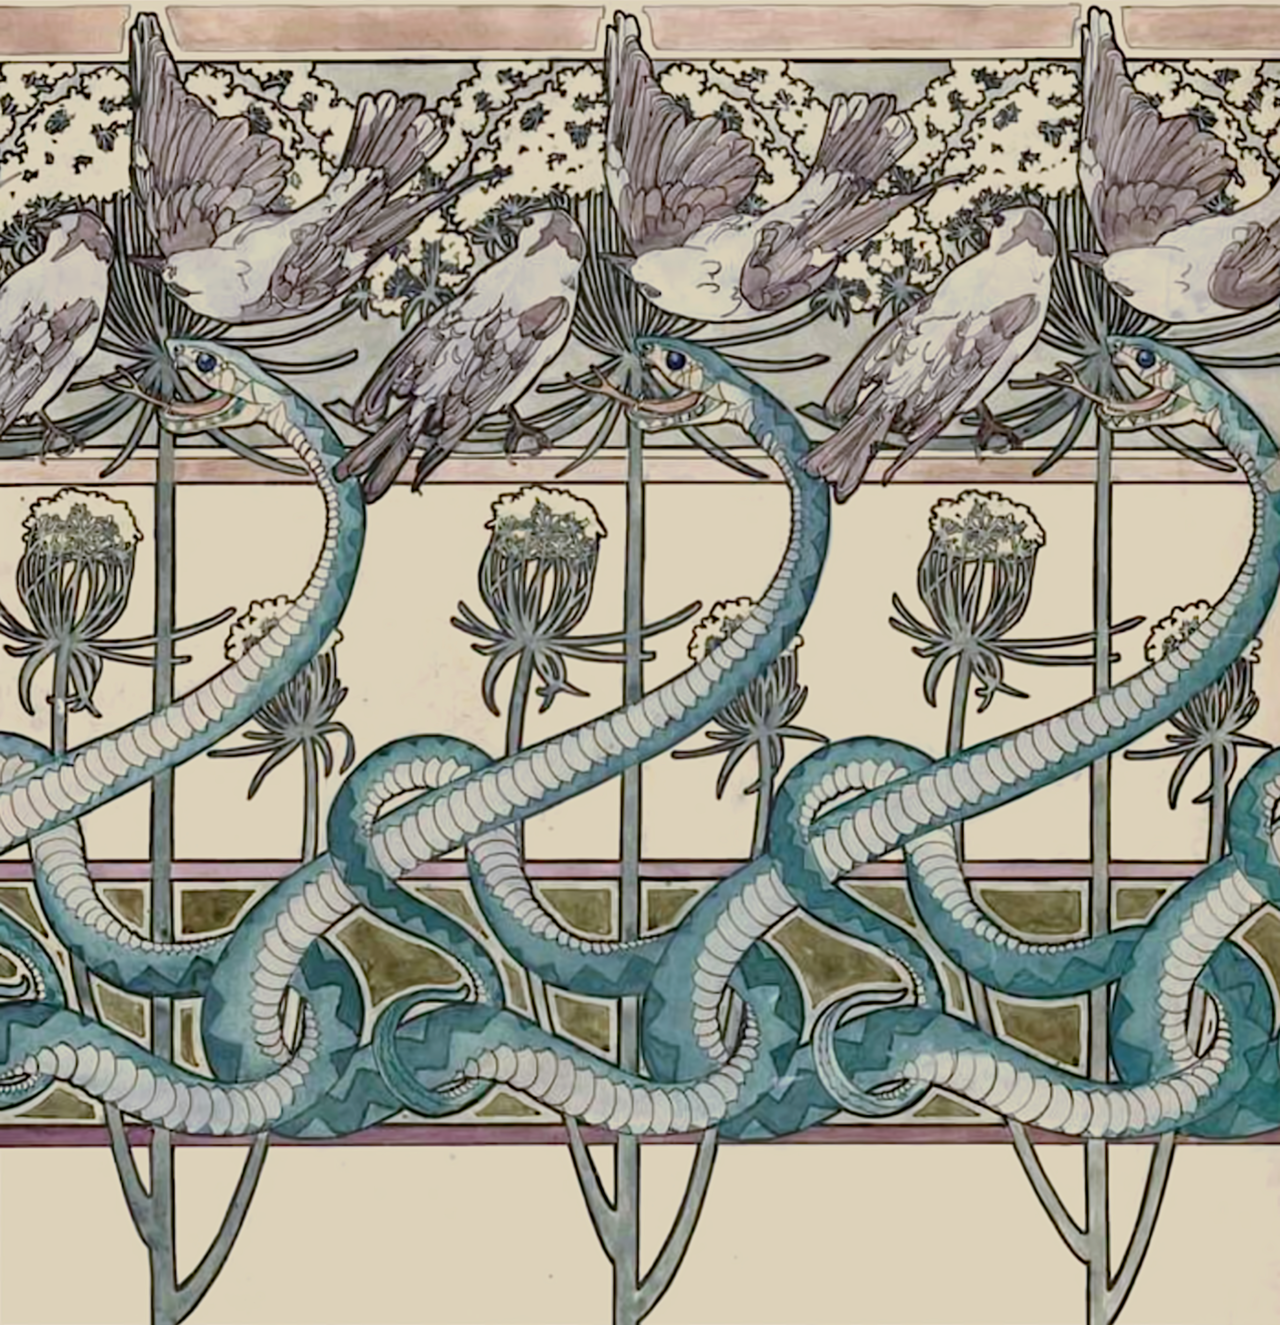 clawmarks:
â€œProjet de frise pour papier peint - Rose Fuchs - c.1901 - via MusÃ©e des Arts DÃ©coratifs
â€